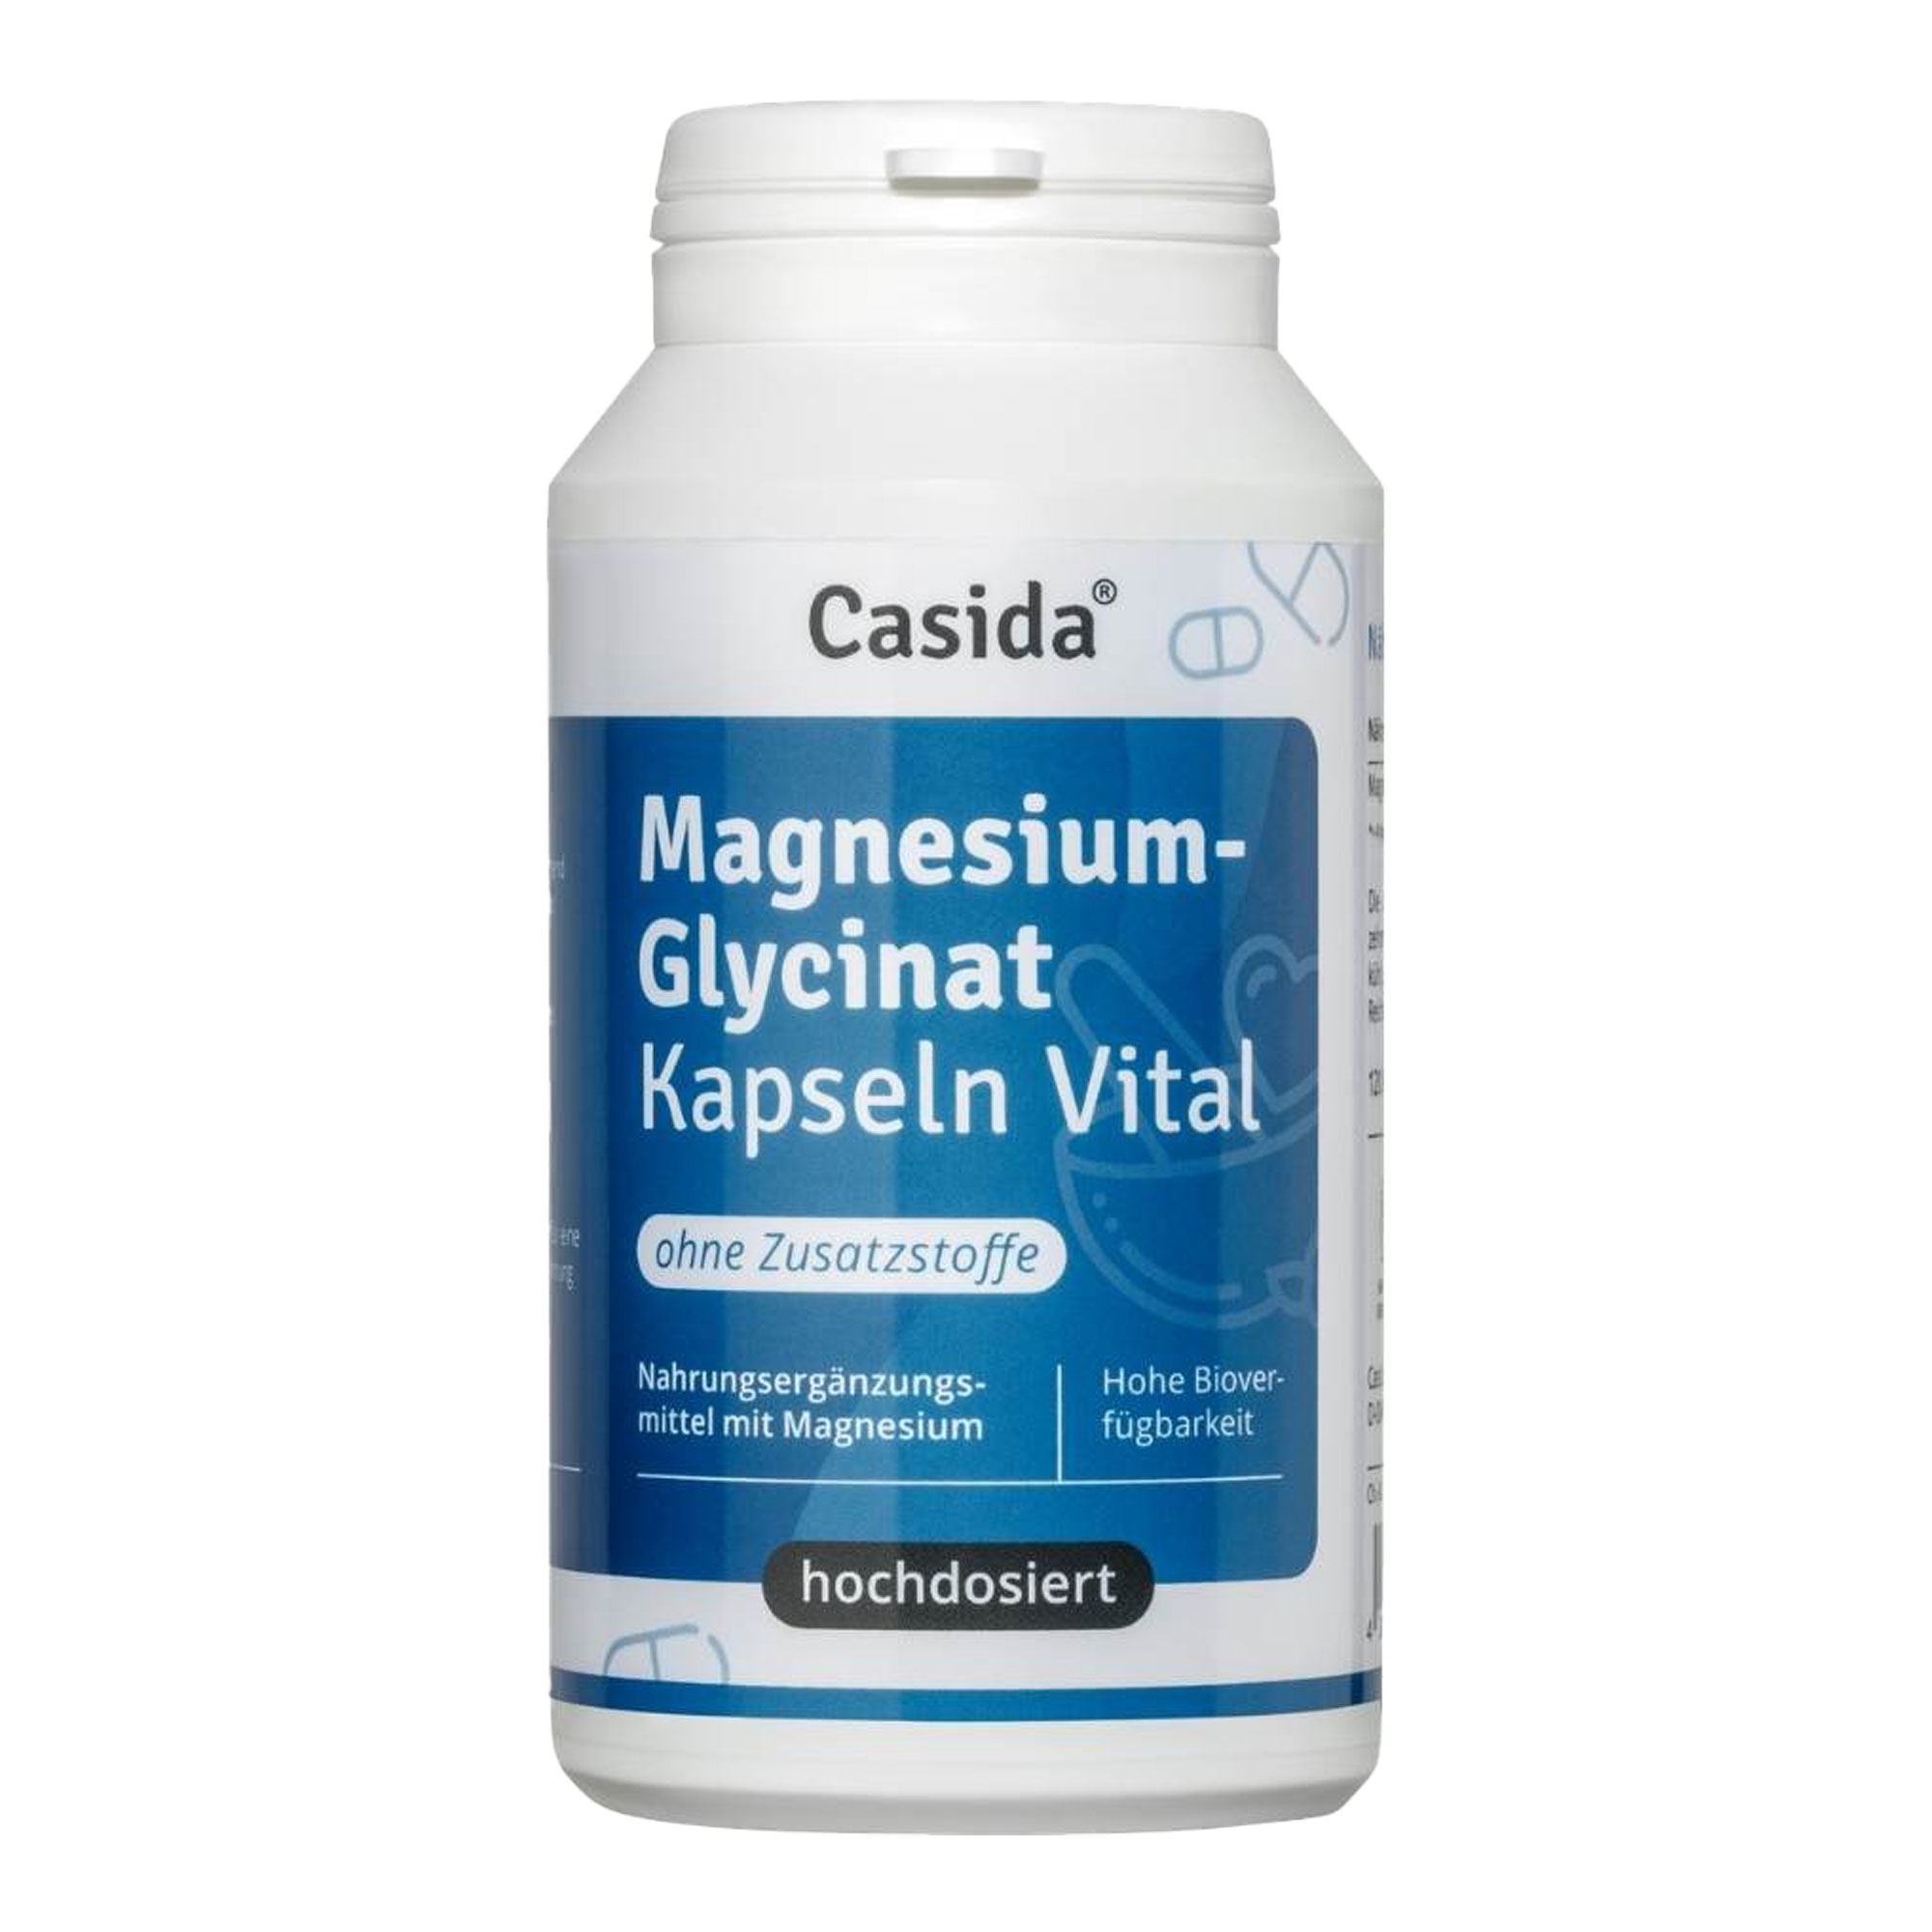 Nahrungsergänzungsmittel mit reinem Magnesiumglycinat in praktischer Kapselform.